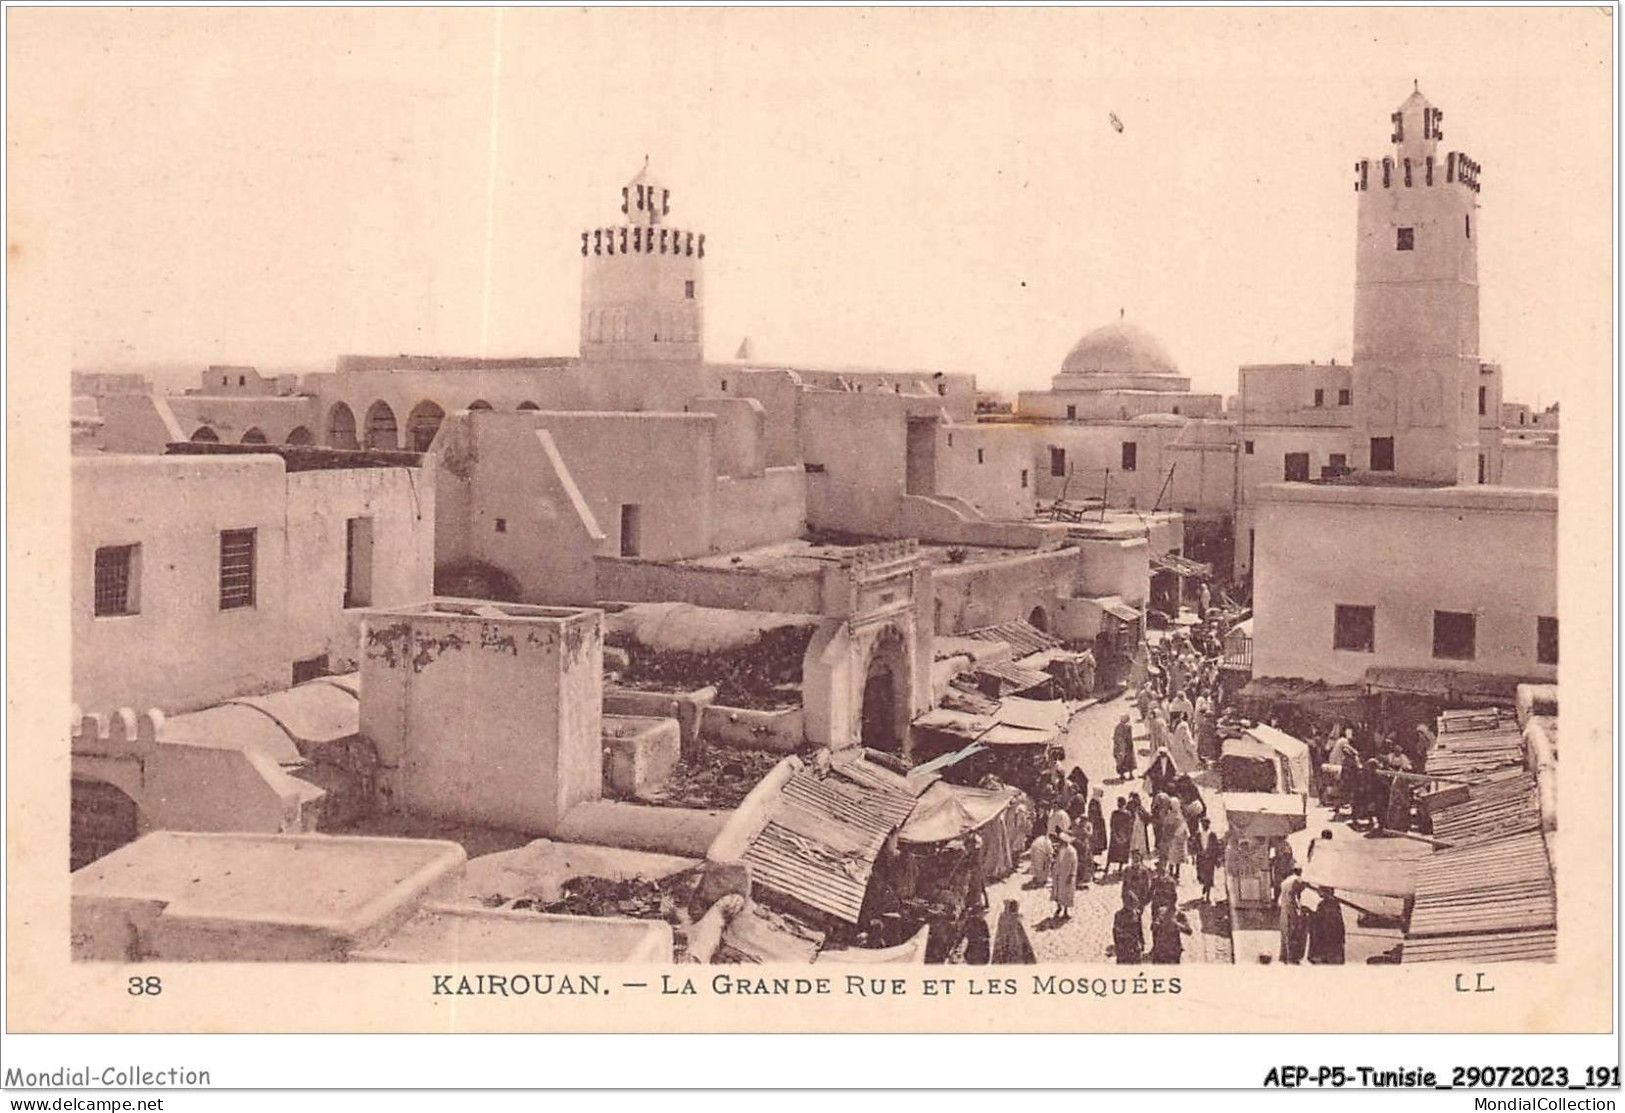 AEPP5-TUNISIE-0463 - KAIROUAN - LA GRANDE RUE ET LES MOSQUEES - Tunisie